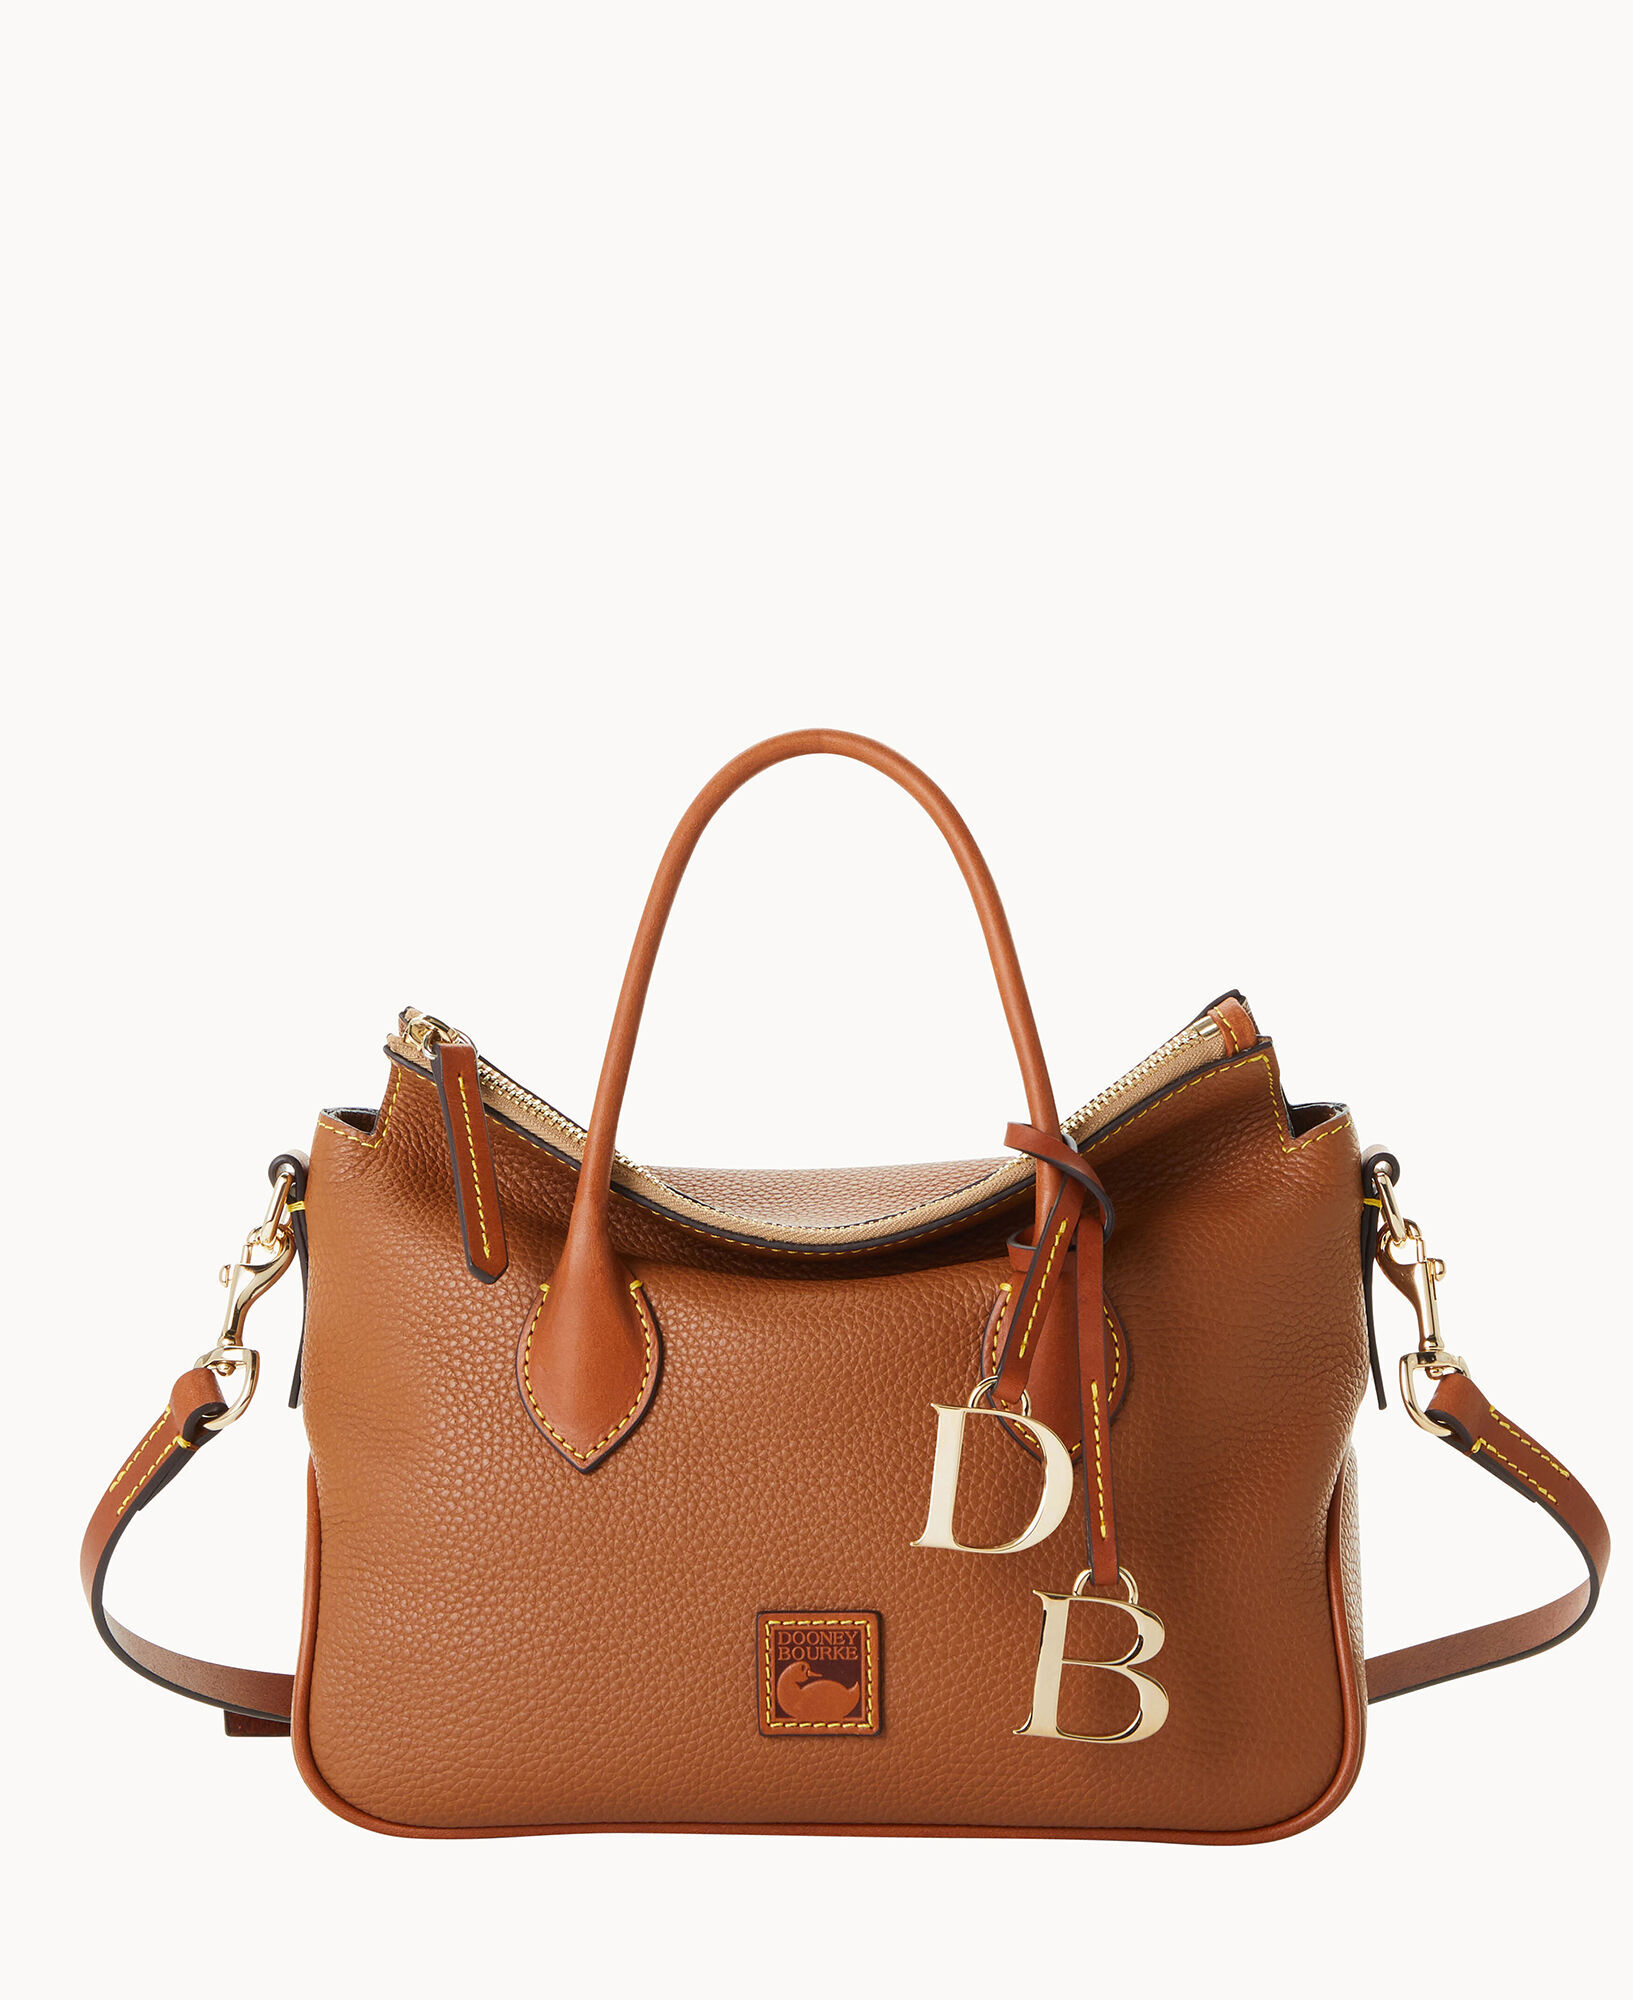 Dooney & Bourke Women's Bag